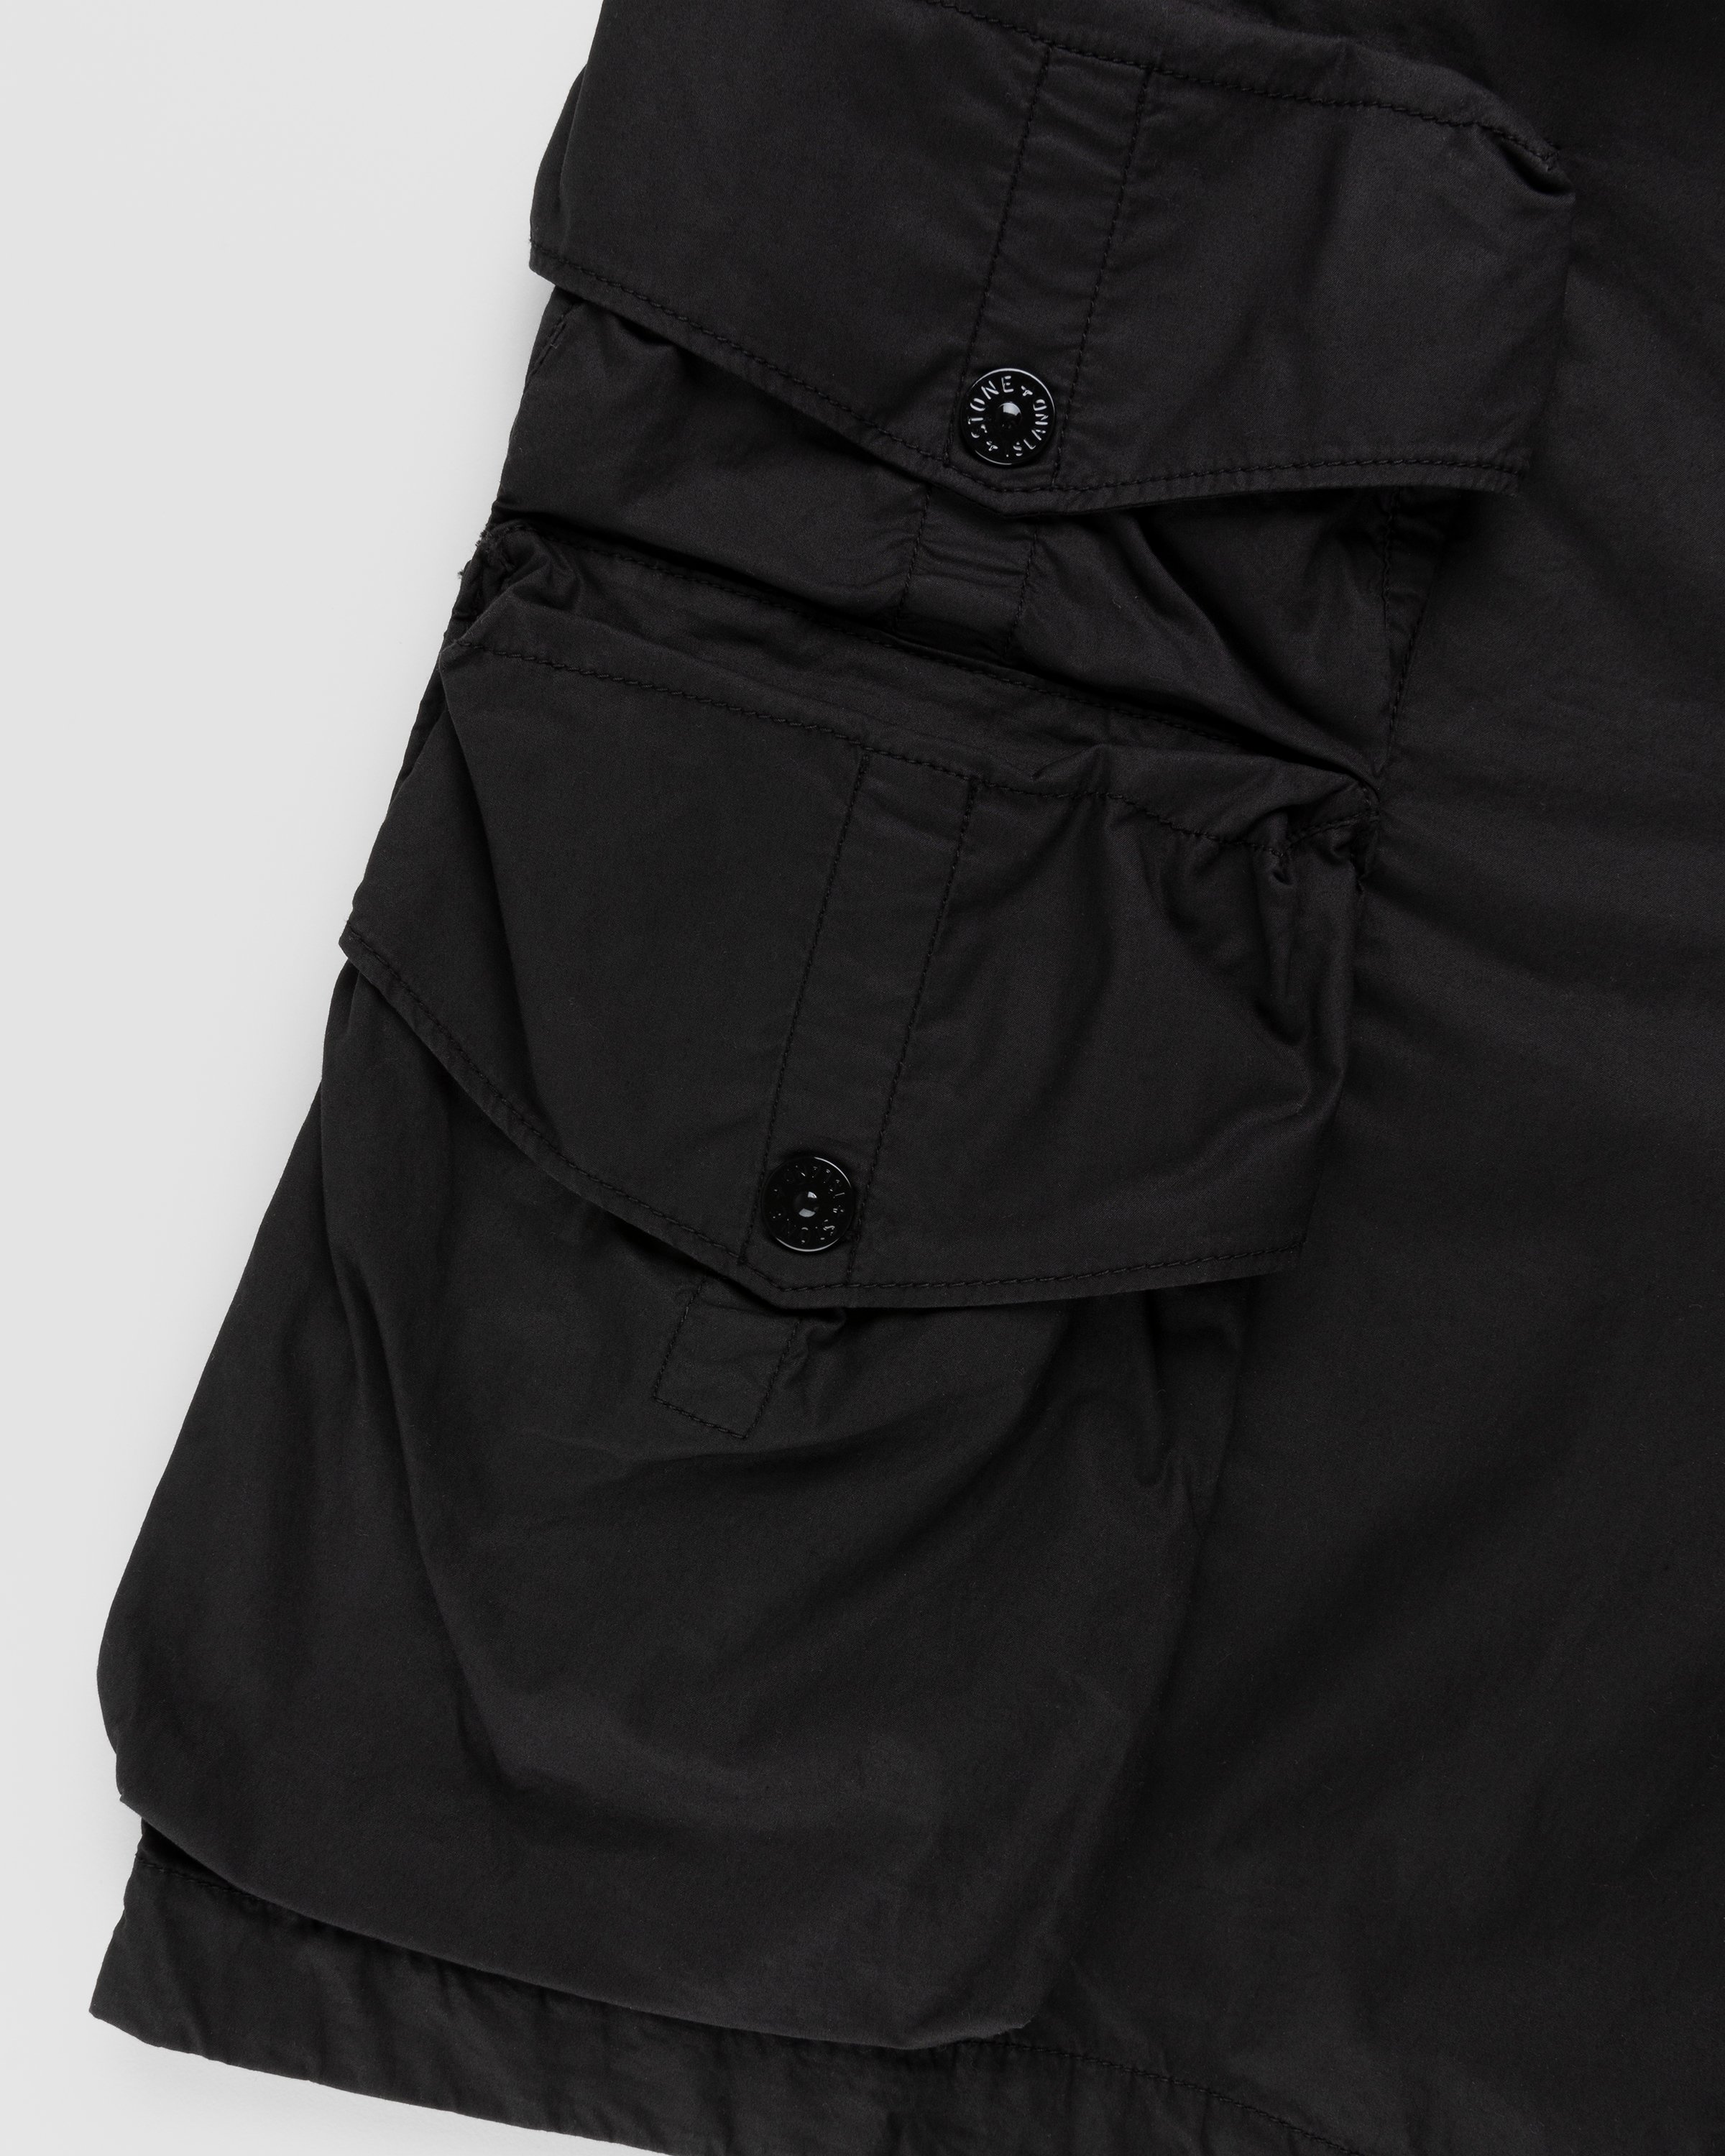 Stone Island - L0103 Garment-Dyed Shorts Black - Clothing - Black - Image 6